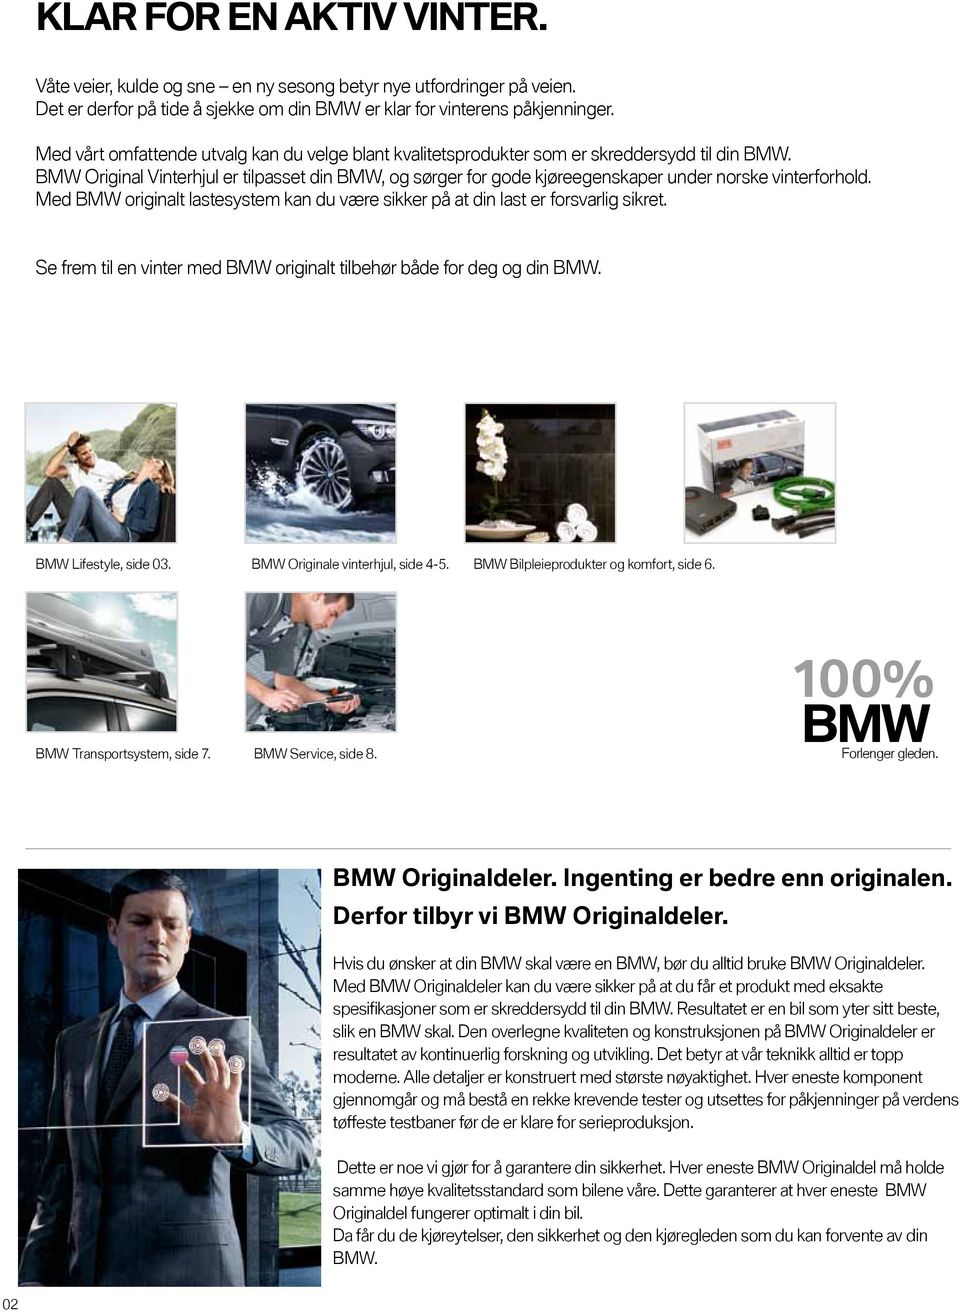 BMW Original Vinterhjul er tilpasset din BMW, og sørger for gode kjøreegenskaper under norske vinterforhold. Med BMW originalt lastesystem kan du være sikker på at din last er forsvarlig sikret.